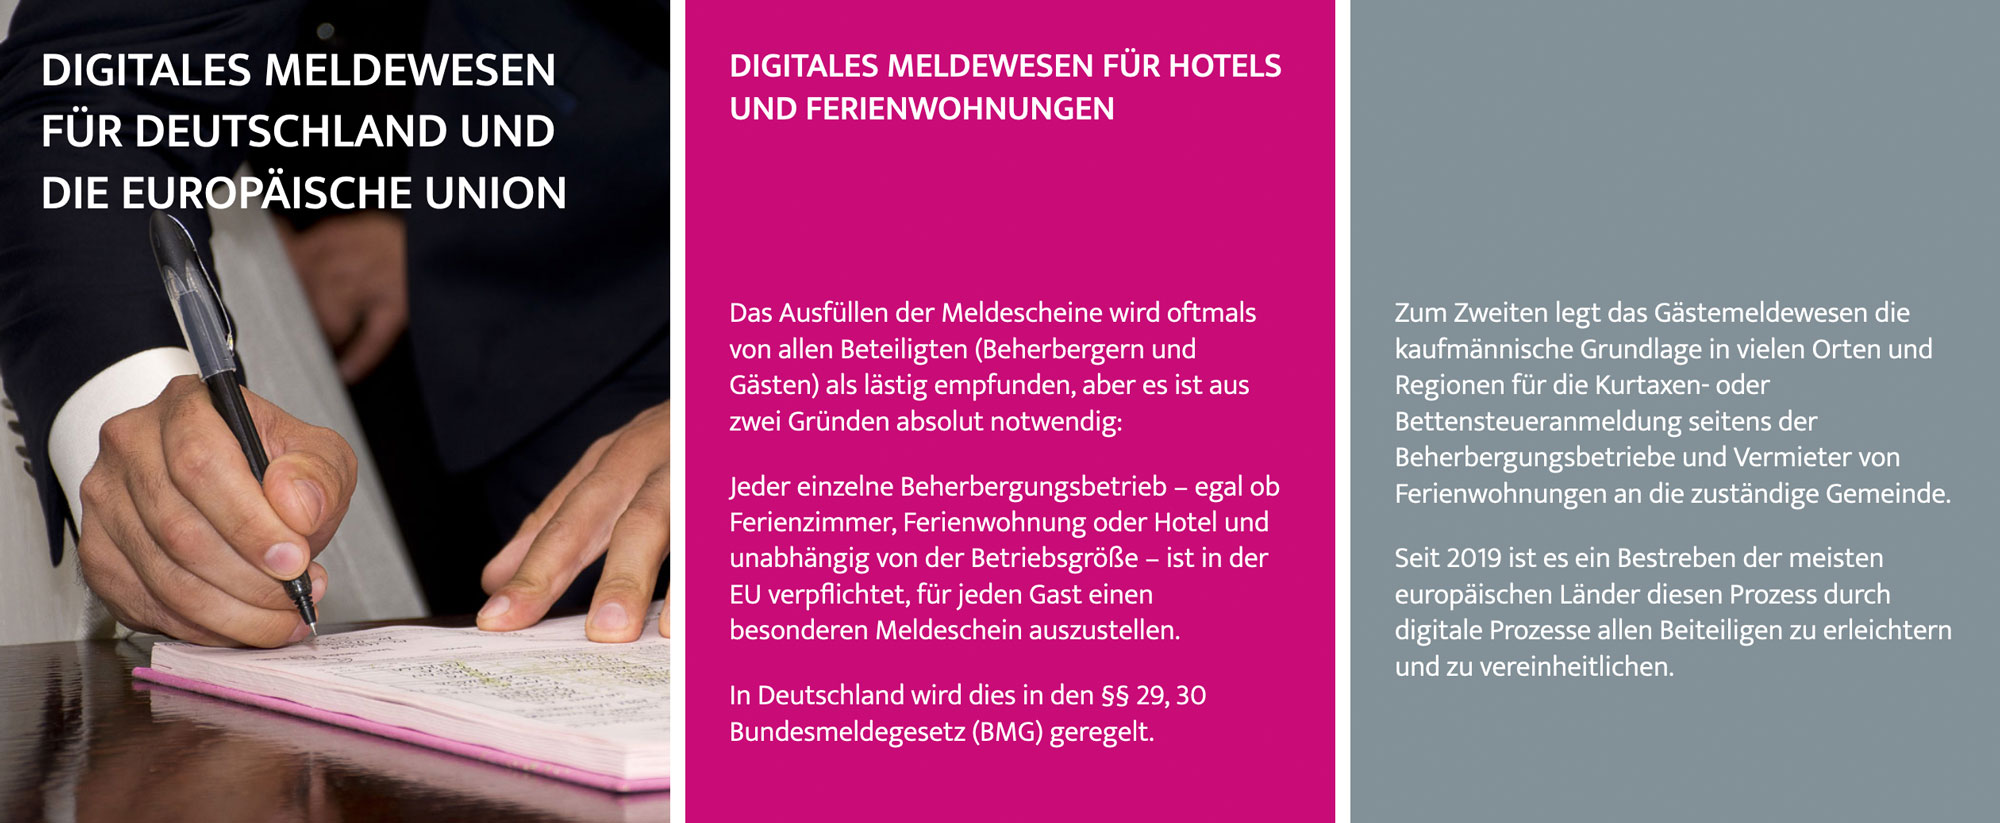 Digitalisierung in der Tourismus-Branche - der digitale Meldeschein für Ihre Gäste